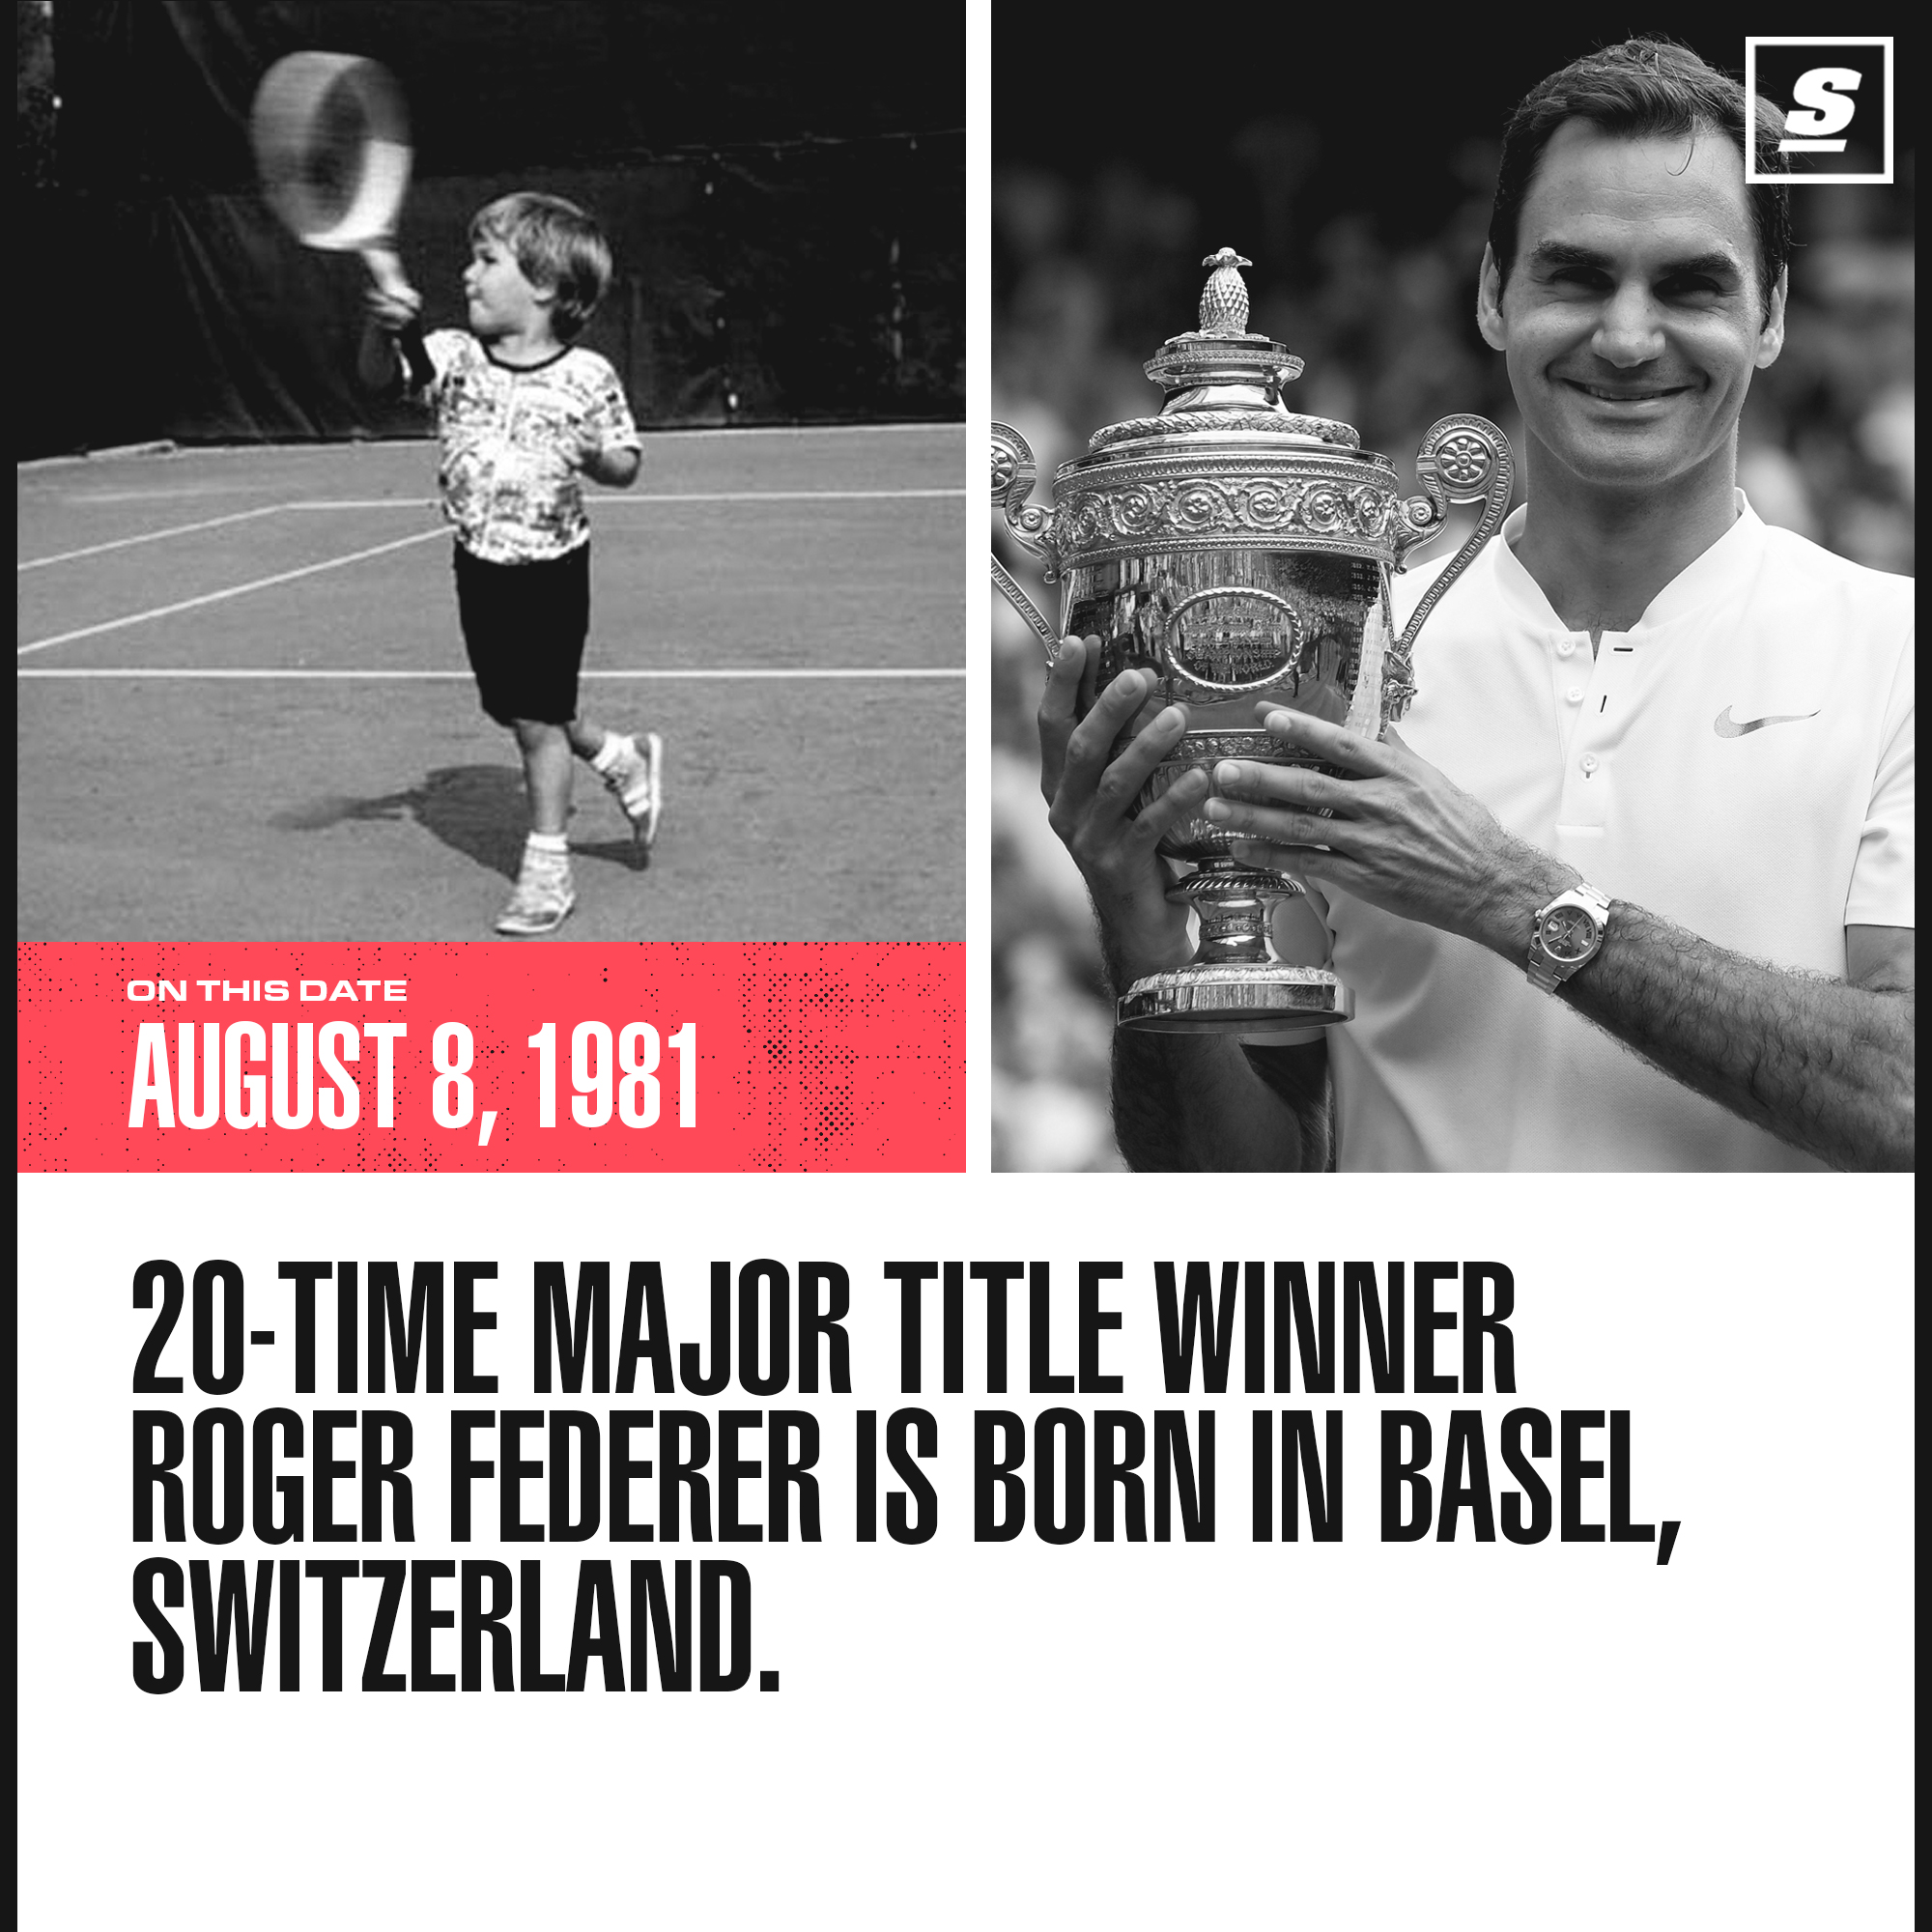   Happy 39th birthday Roger Federer! 